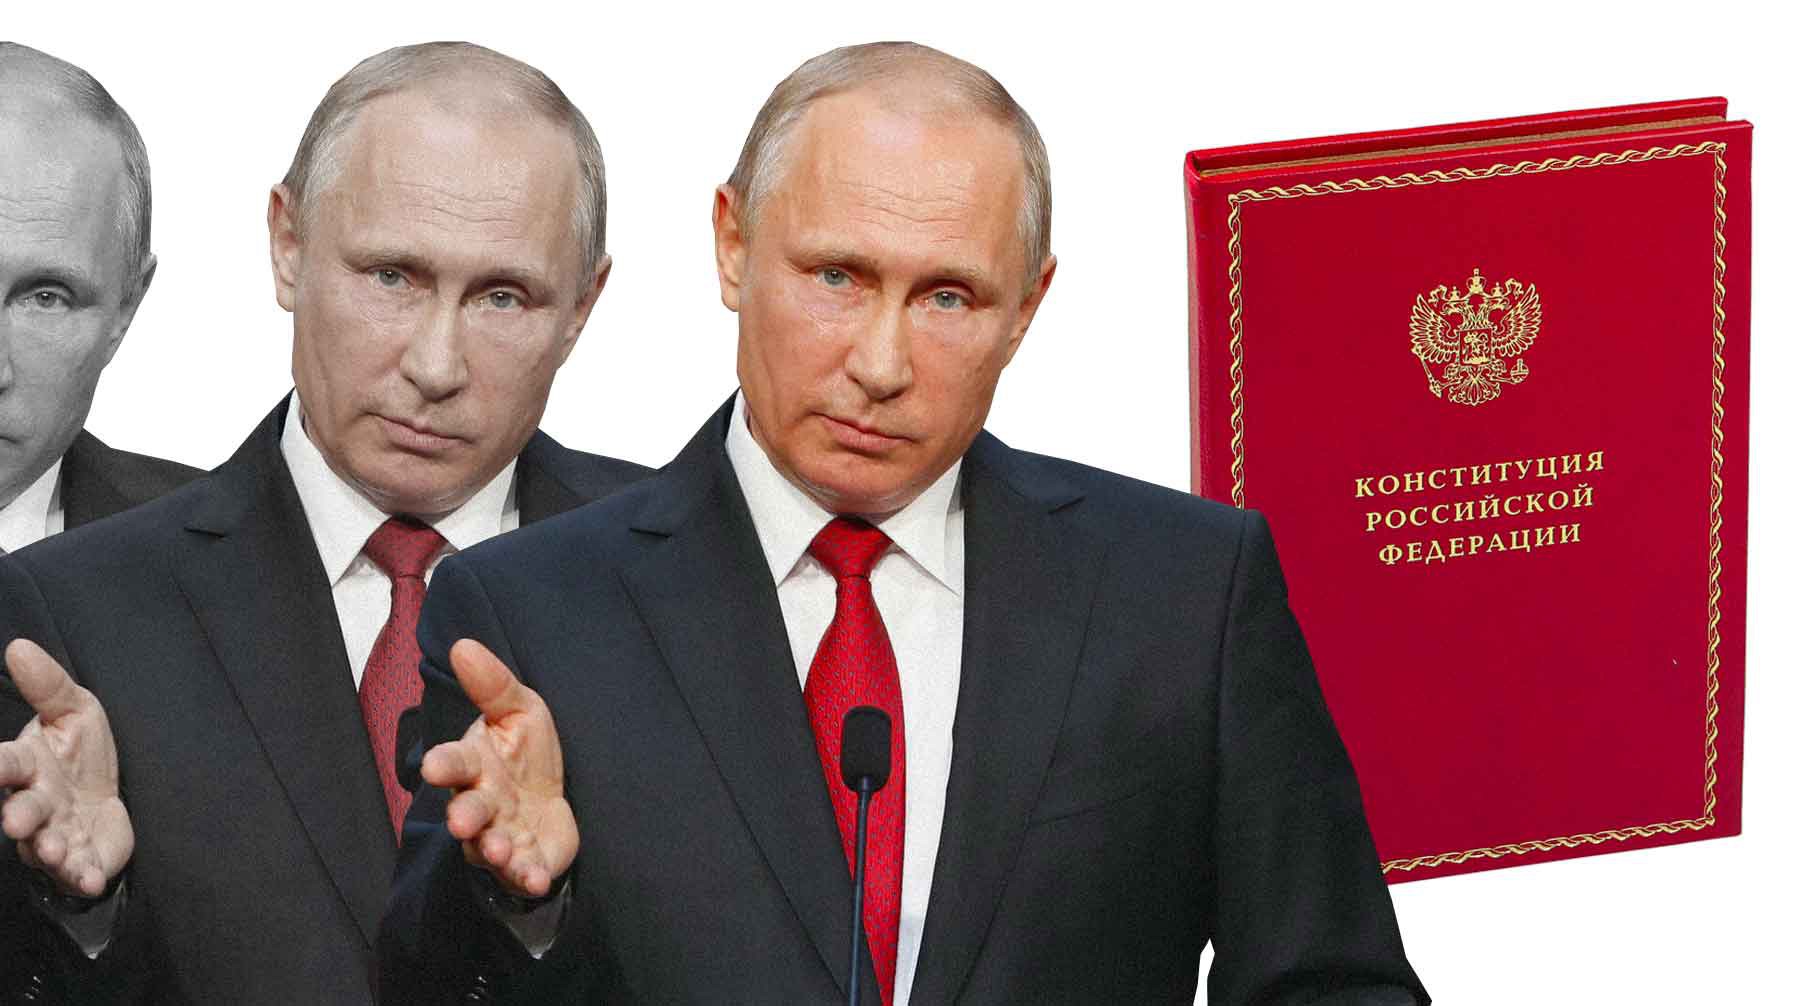 Dailystorm - «Убрать «подряд»: Путин предложил ограничить число сроков президентства по Конституции